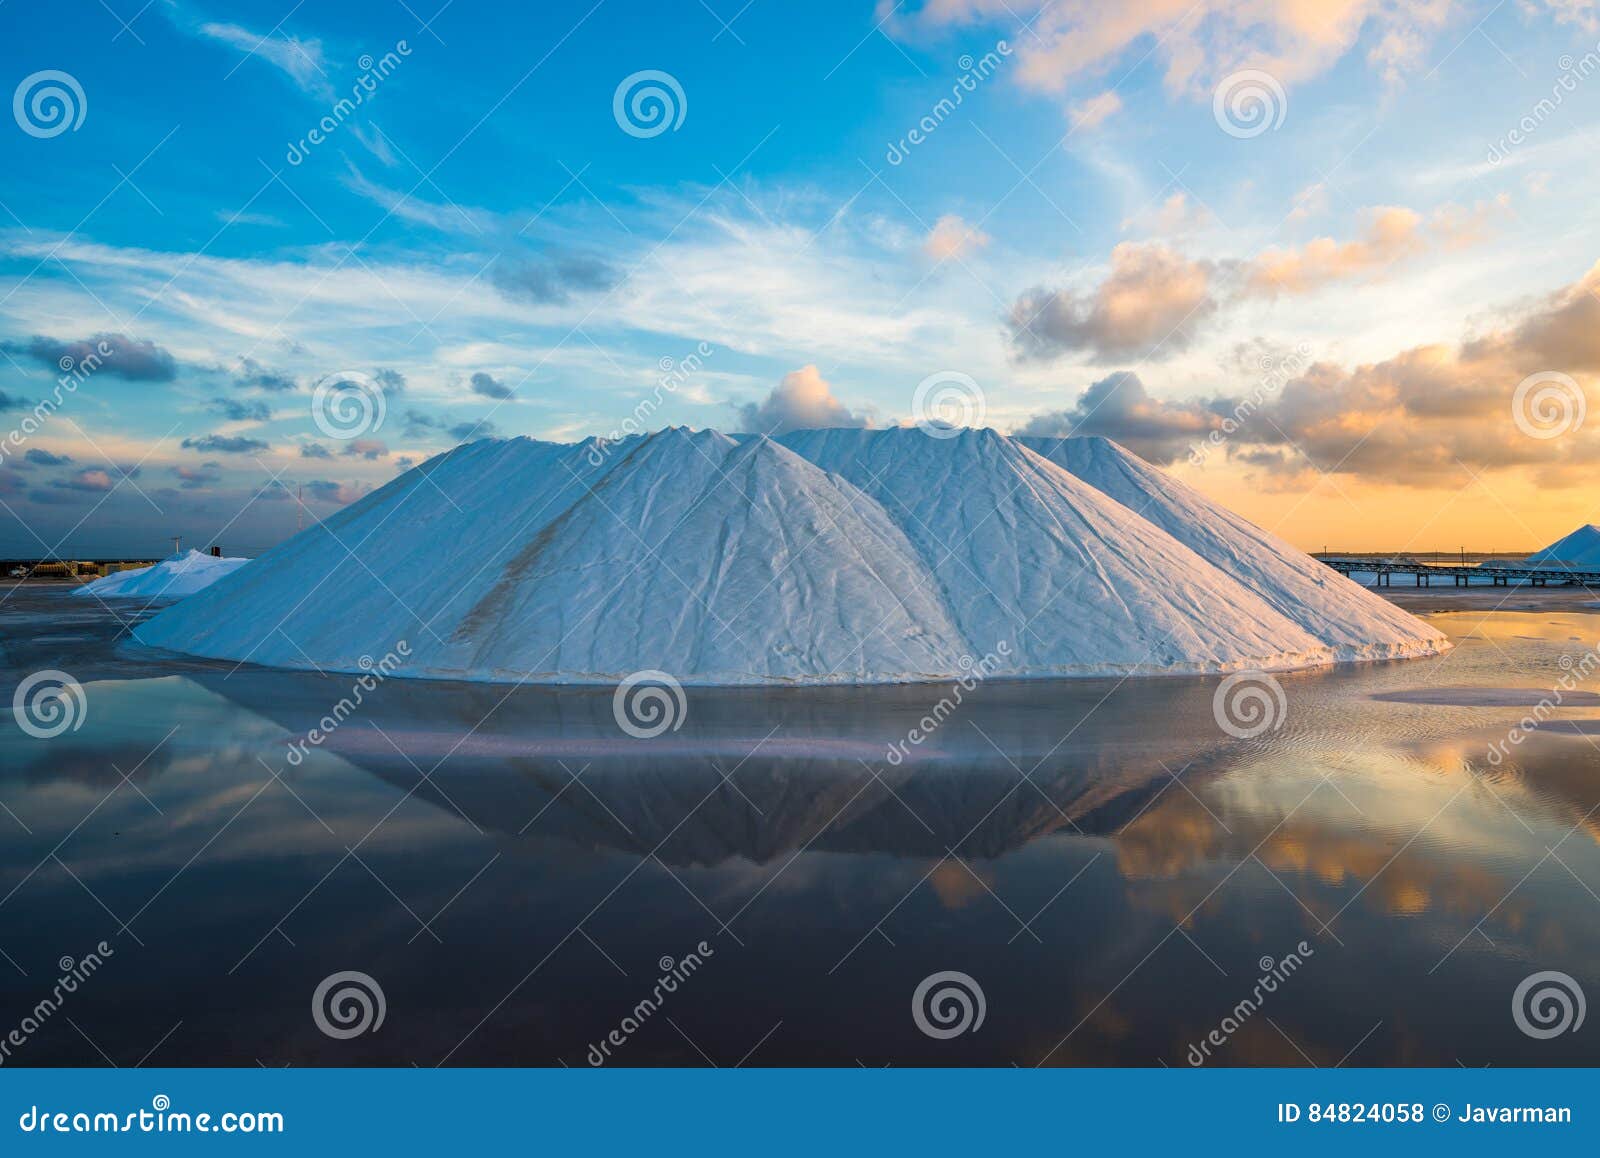 natural sea salt producing in las coloradas, yucatan, mexico